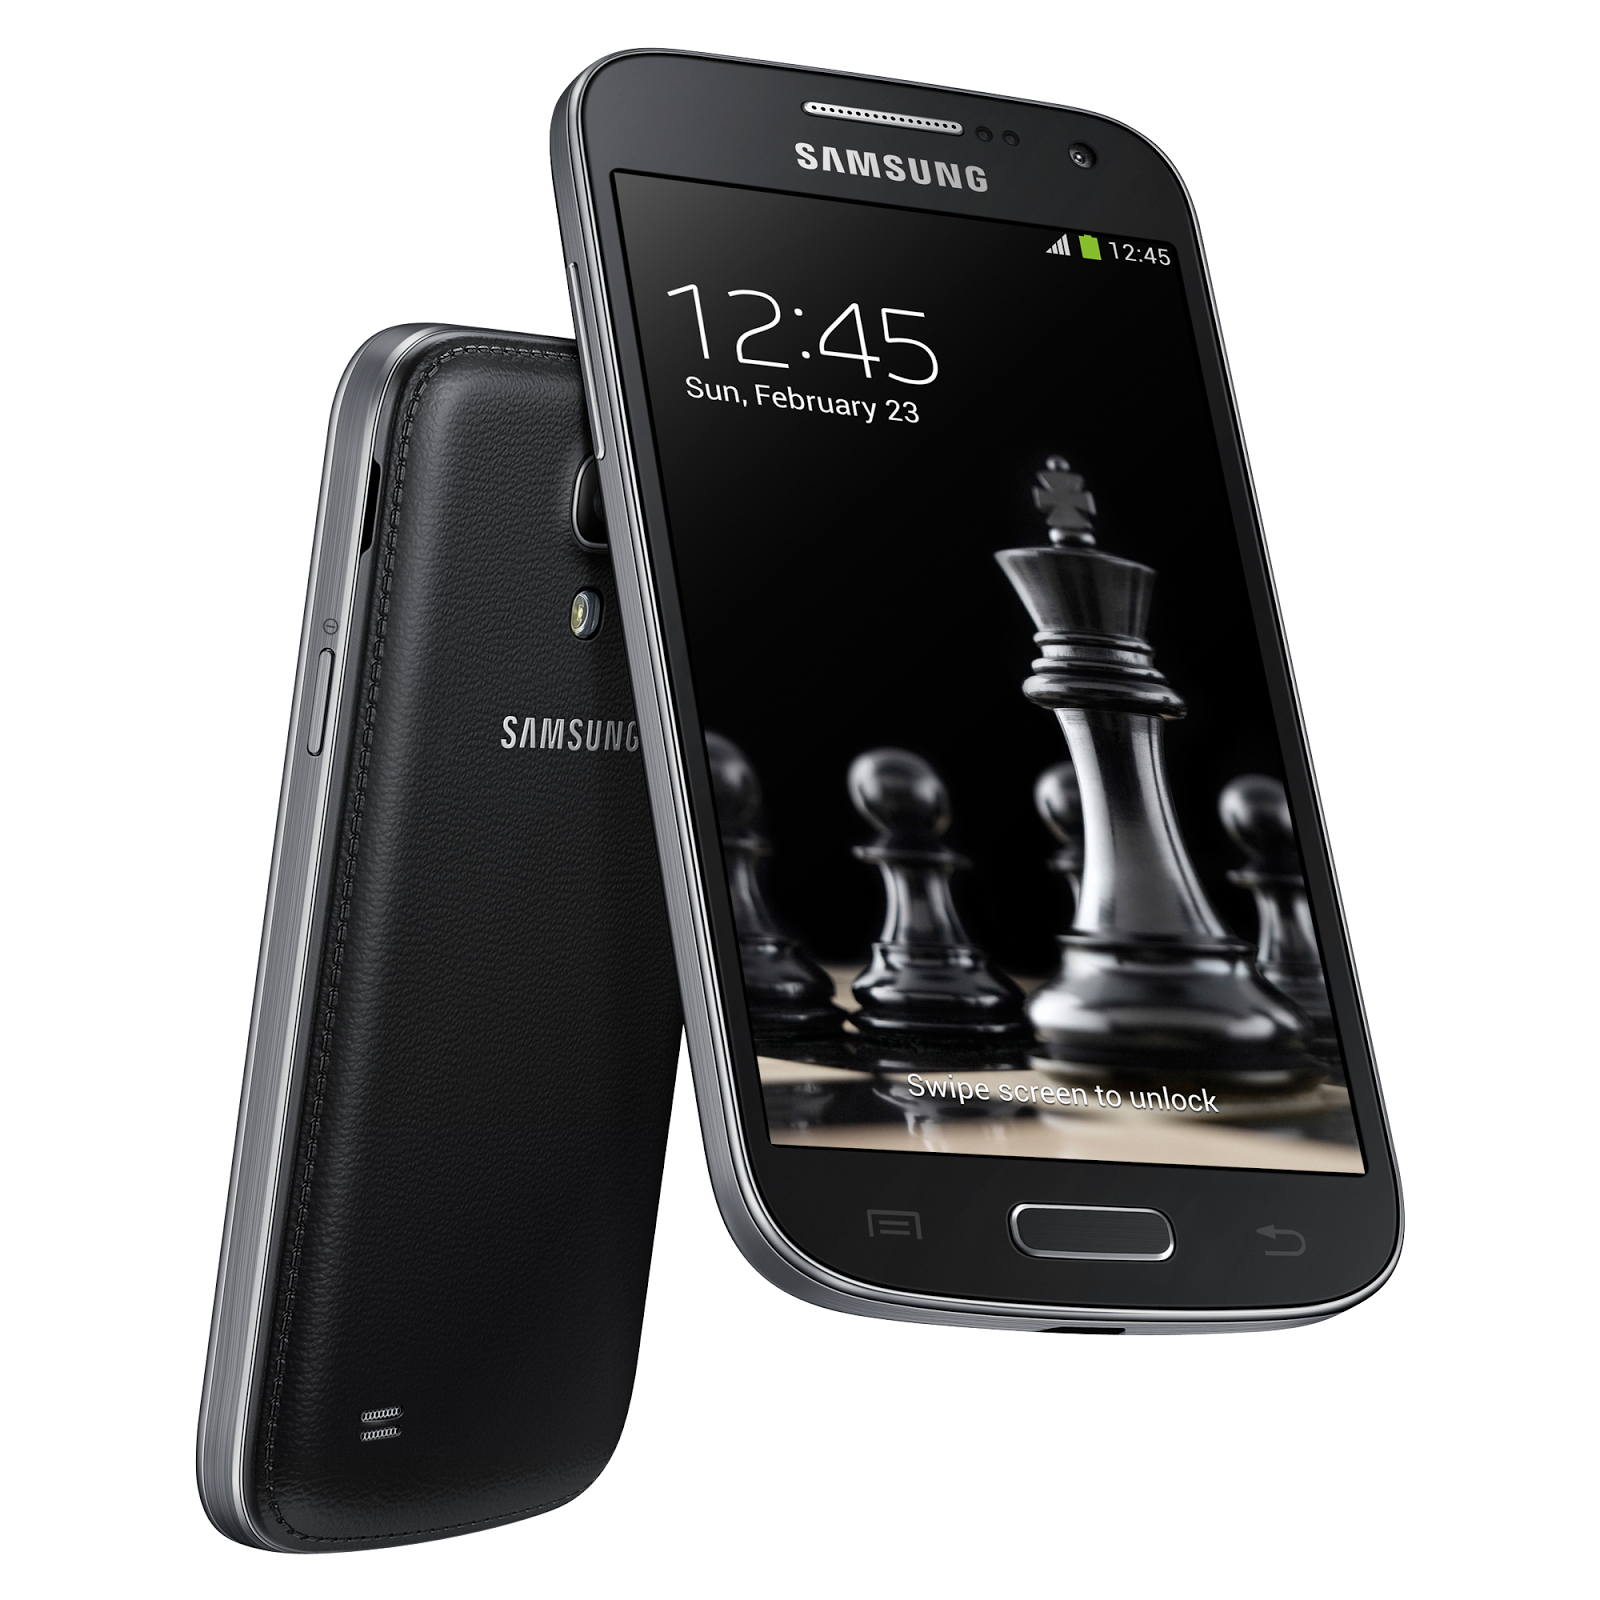 Samsung galaxy s4 black